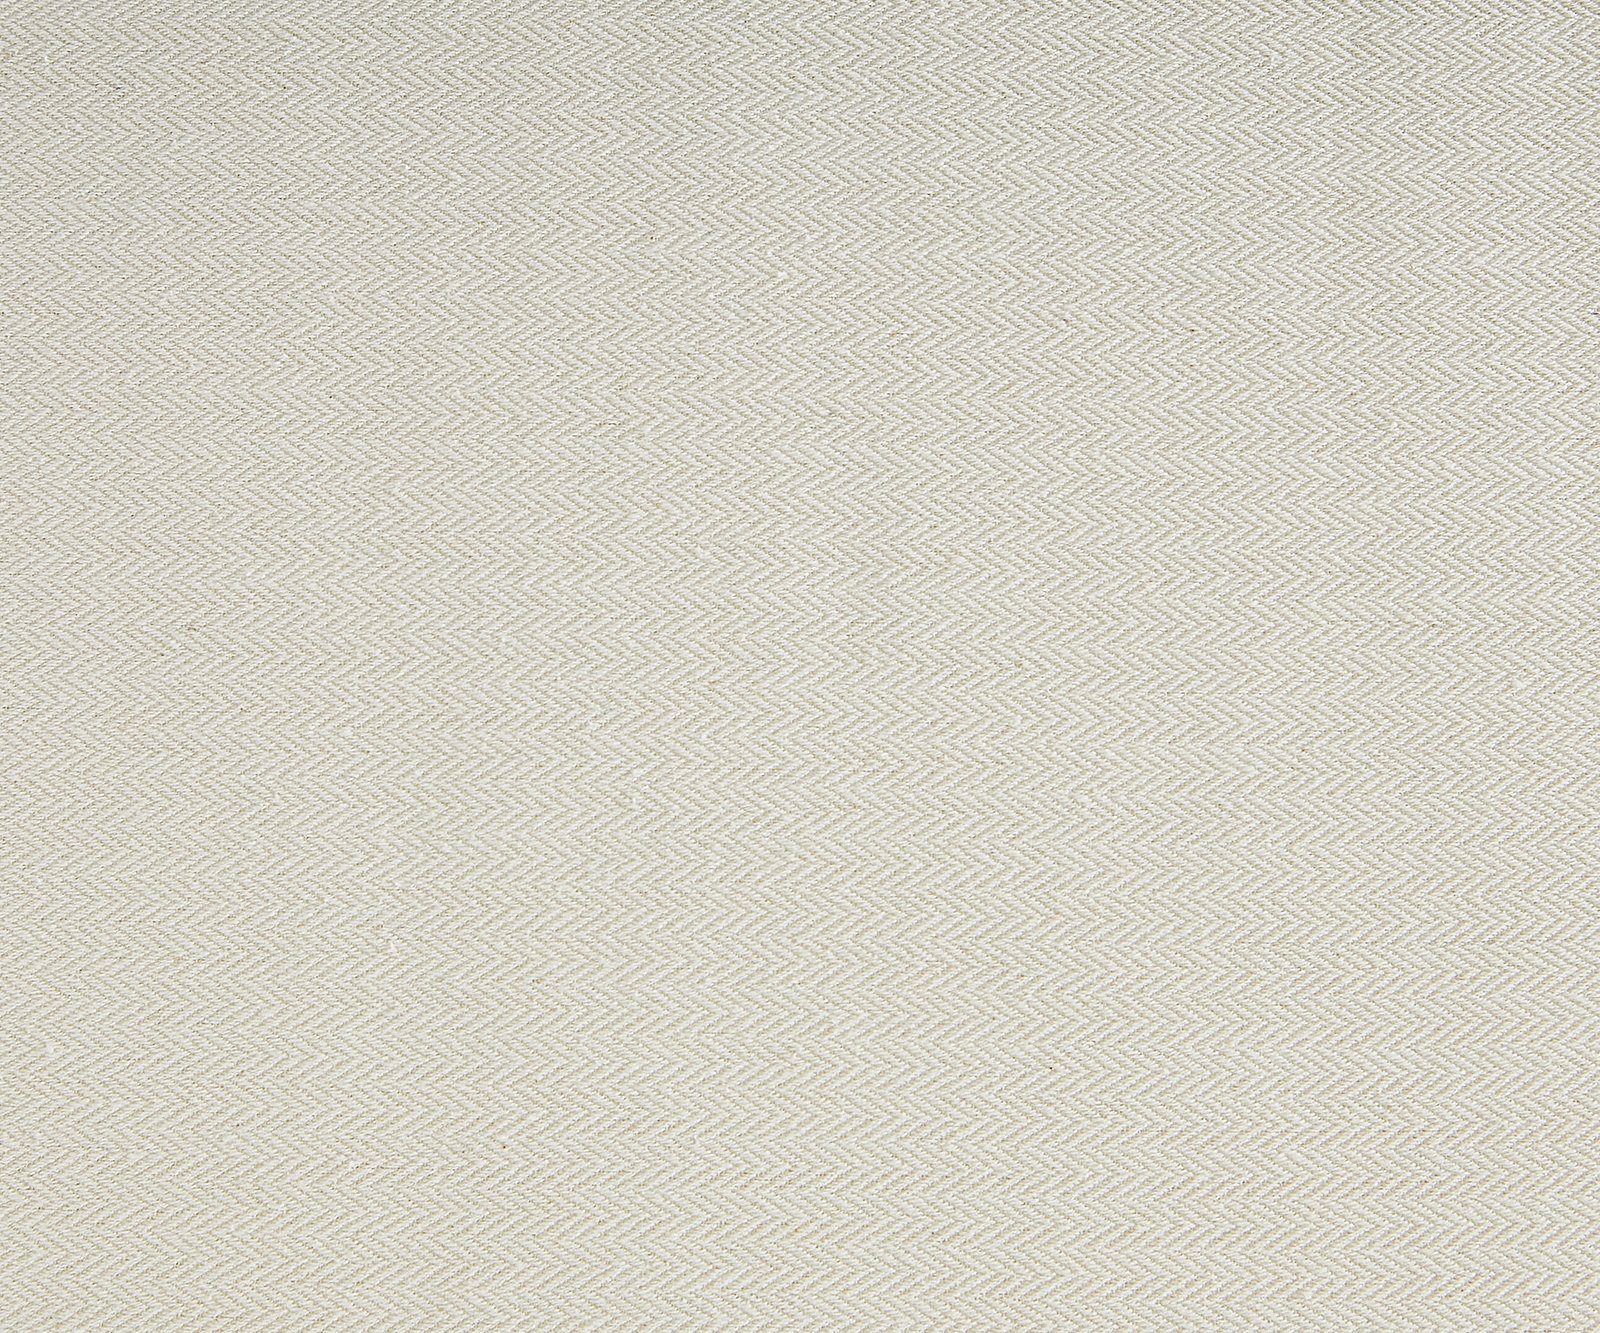 White 103x95 Nizza, Loungesessel Kissen Gartensessel white Rattan Weiß cm DELIFE weiß mit washed aus Washed /